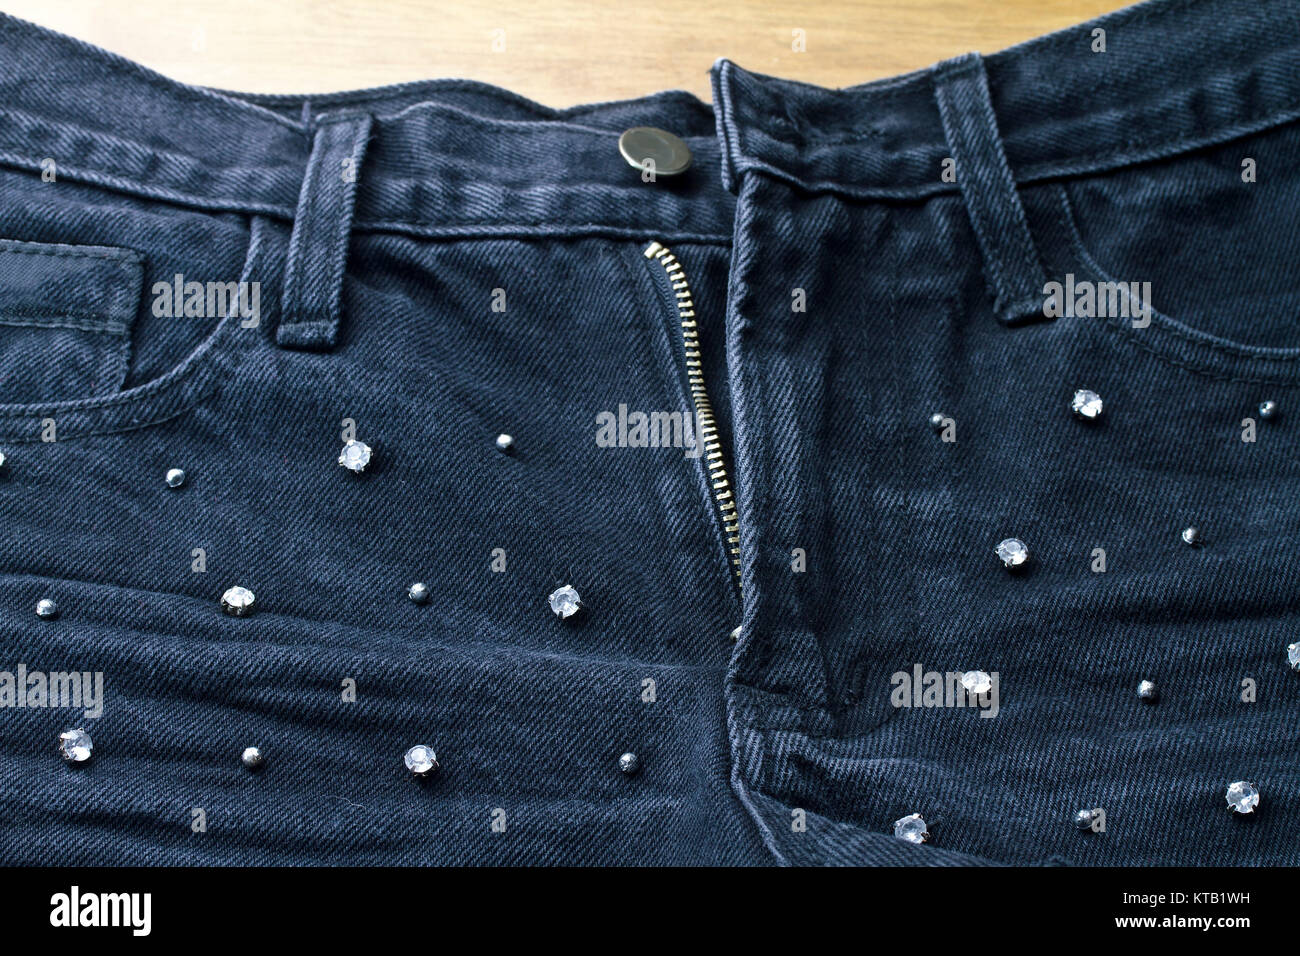 Jeans dama moda disparos closeup detalle de diamante Fotografía de